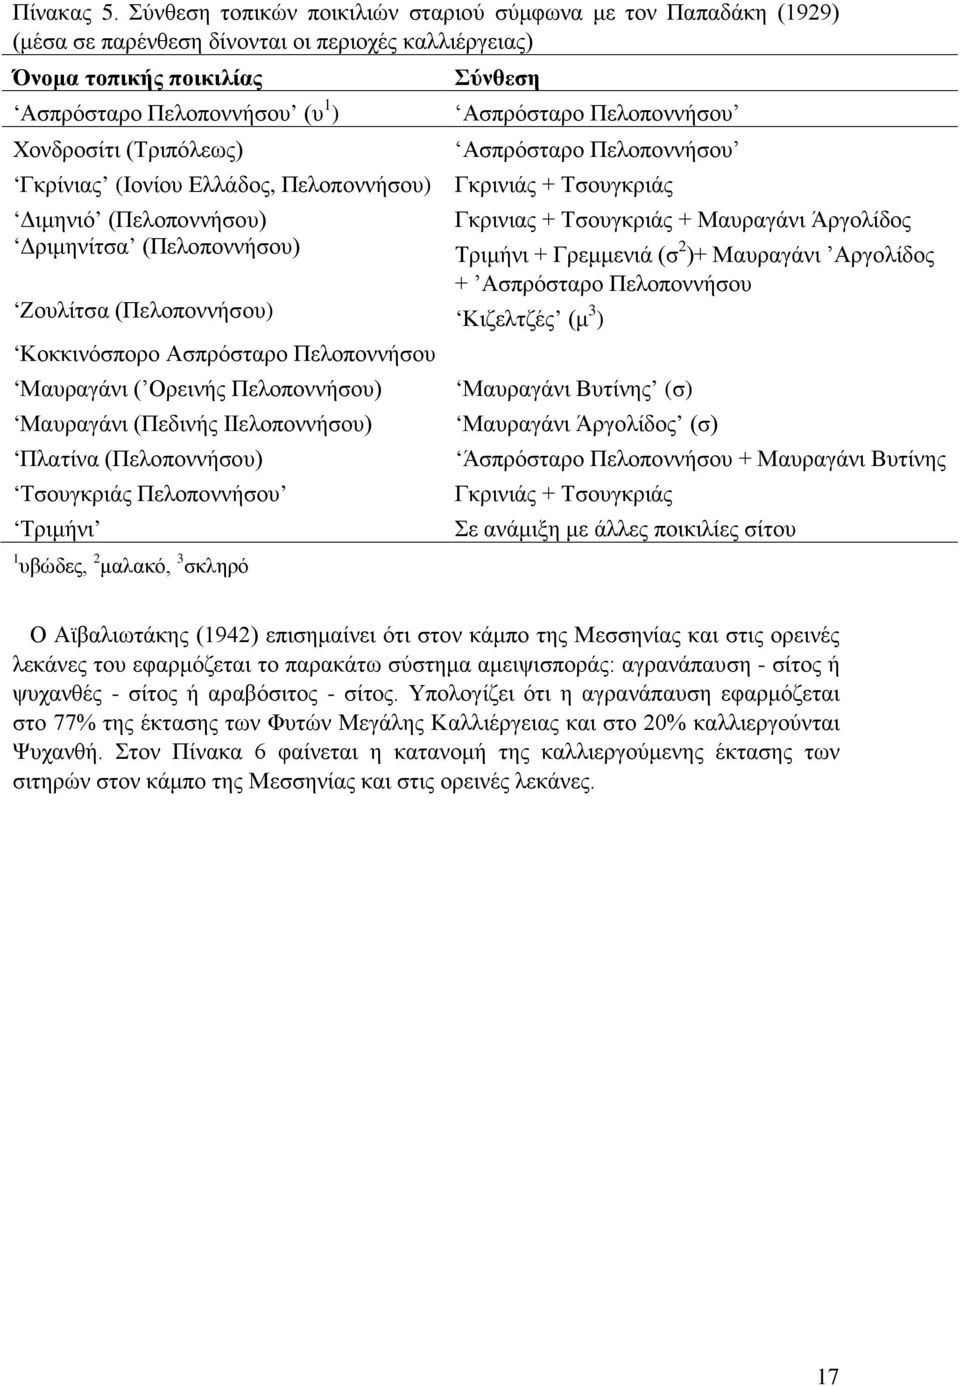 Πελοποννήσου Χονδροσίτι (Τριπόλεως) Ασπρόσταρο Πελοποννήσου Γκρίνιας (Ιονίου Ελλάδος, Πελοποννήσου) Γκρινιάς + Τσουγκριάς Διμηνιό (Πελοποννήσου) Γκρινιας + Τσουγκριάς + Μαυραγάνι Άργολίδος Δριμηνίτσα